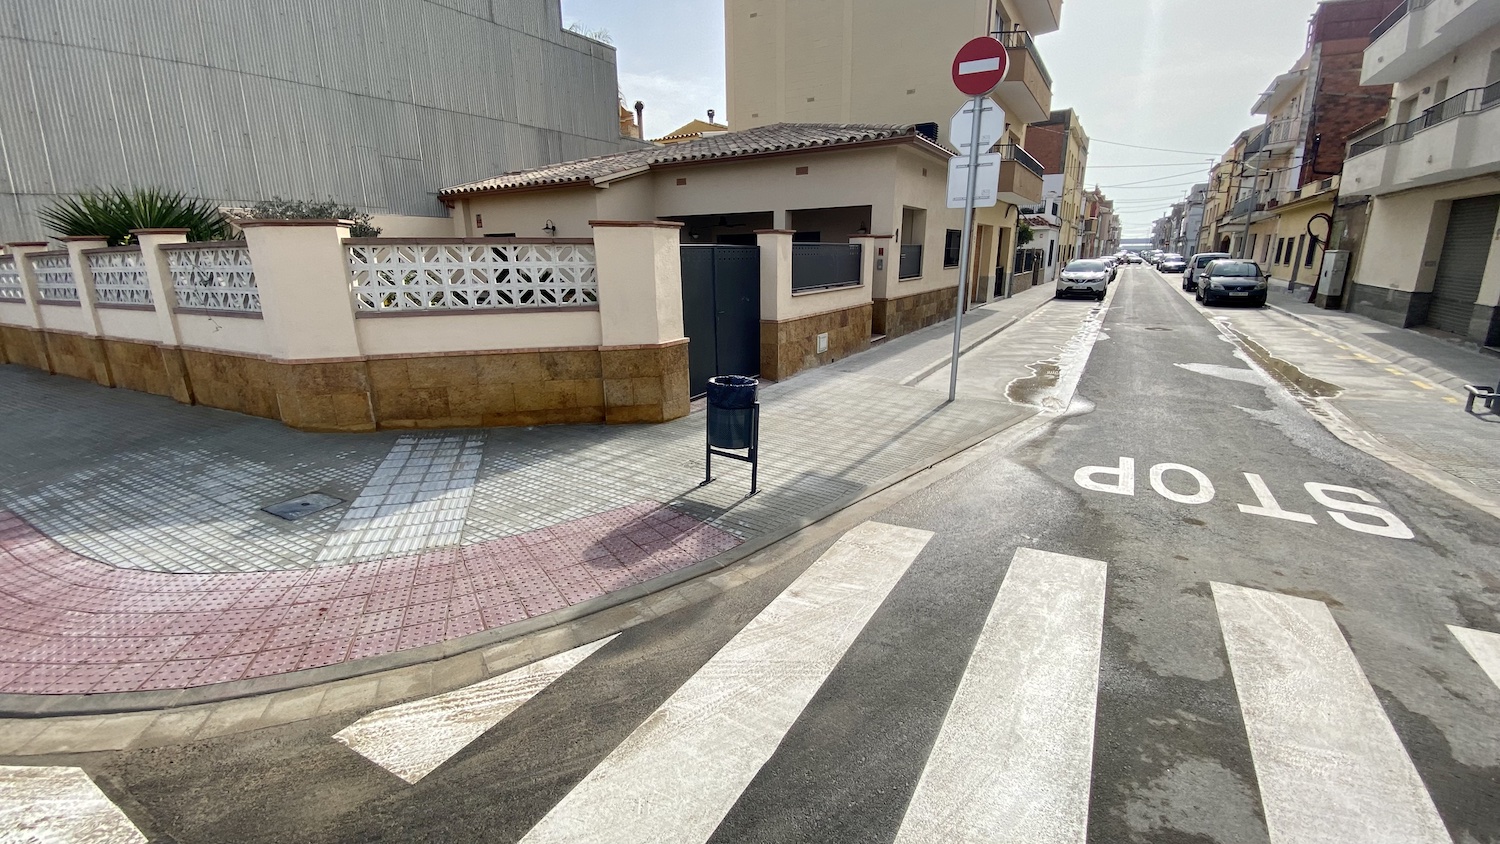 Acabades les obres de remodelació del carrer Narcís Monturiol